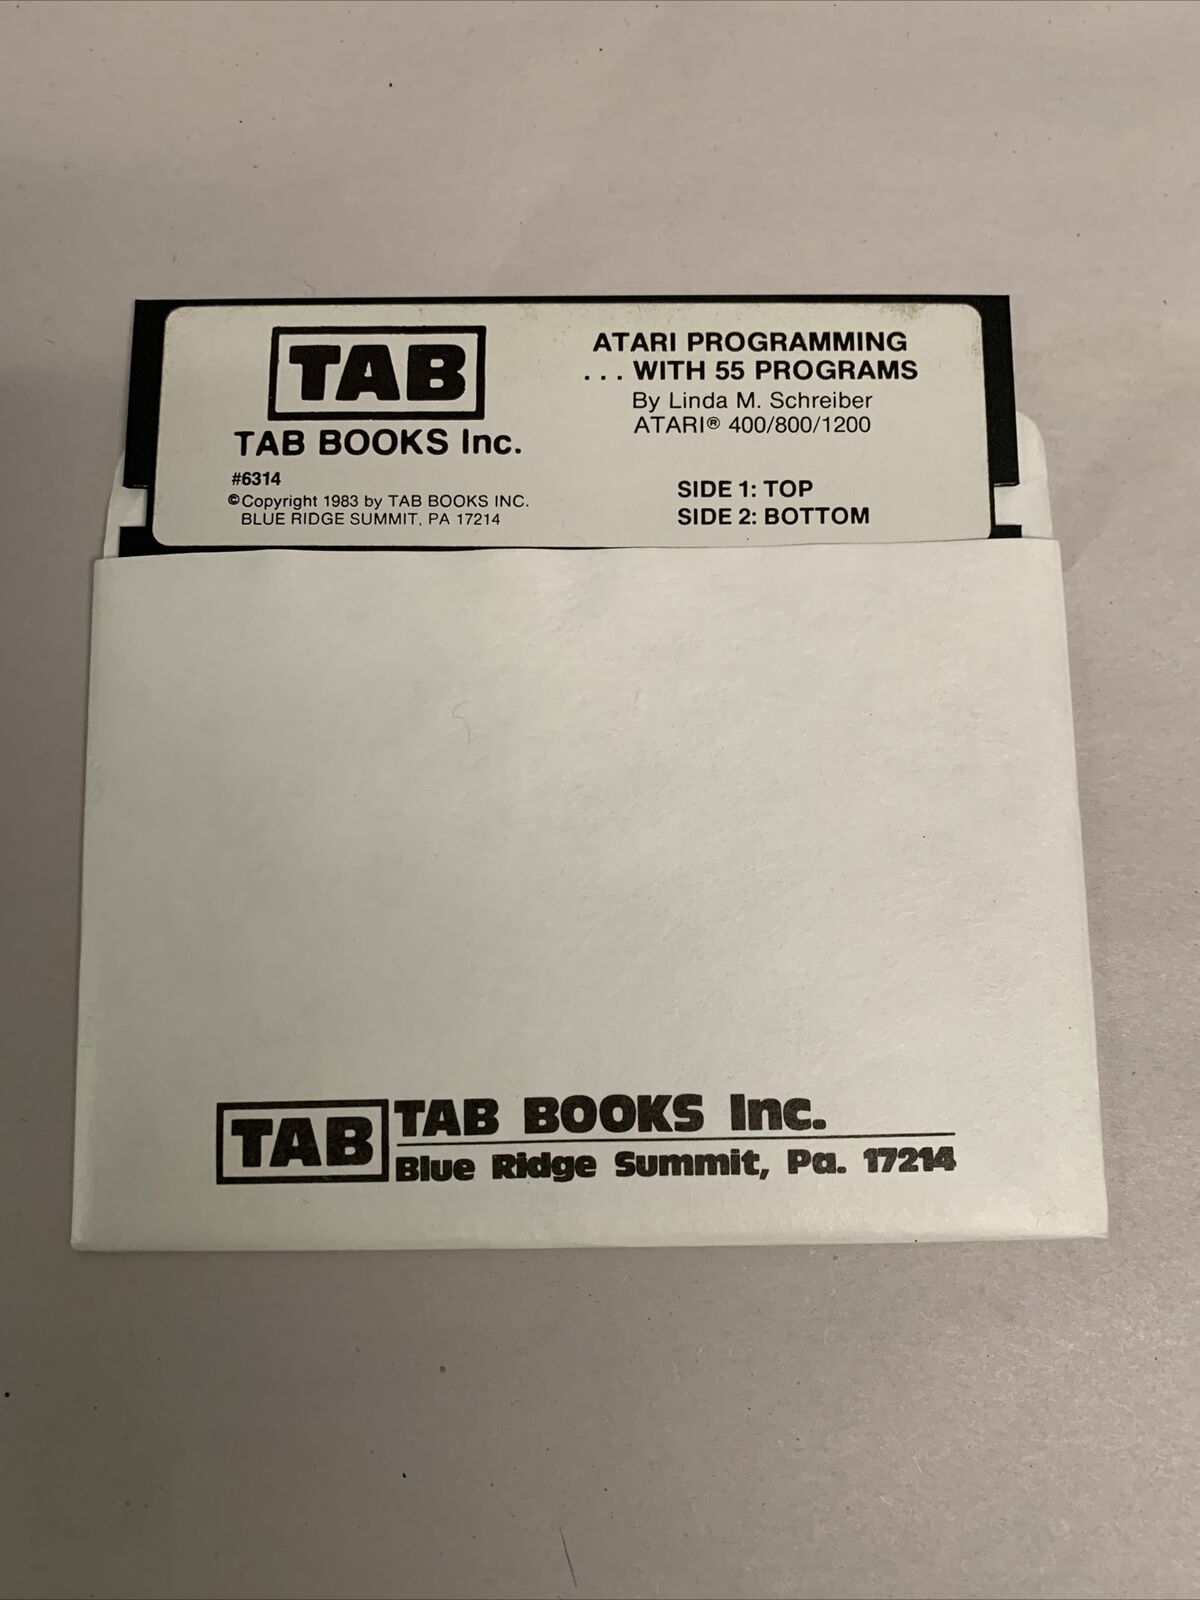 TAB ATARI PROGRAMMING WITH 55 PROGRAMSPROGRAM DISK Atari (400/800/1200) 1983